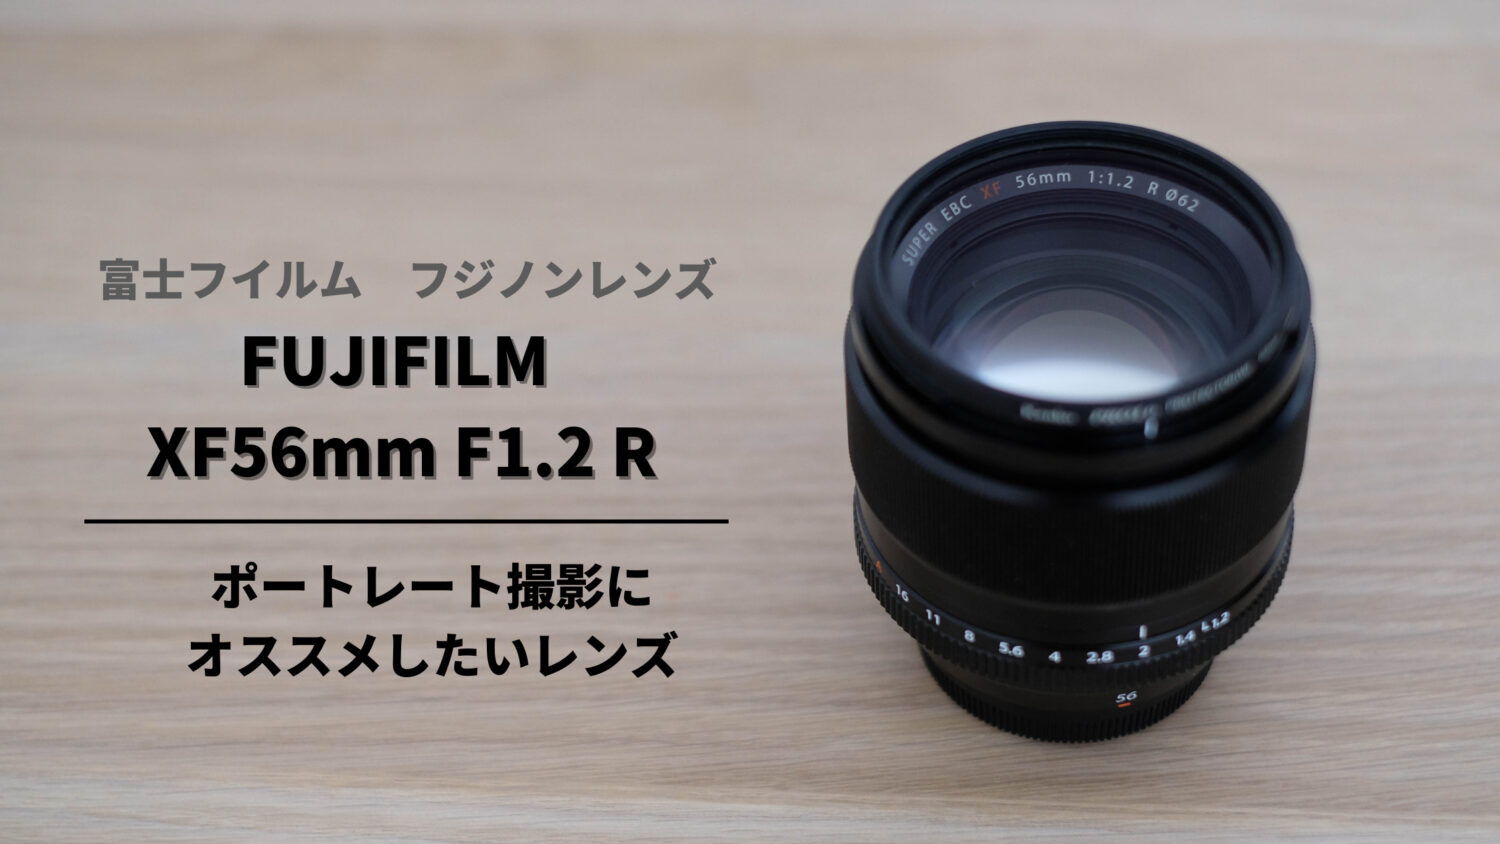 ポートレート撮影なら必須級レンズ!!『フジフイルム XF56mm F1.2 R』購入レビュー